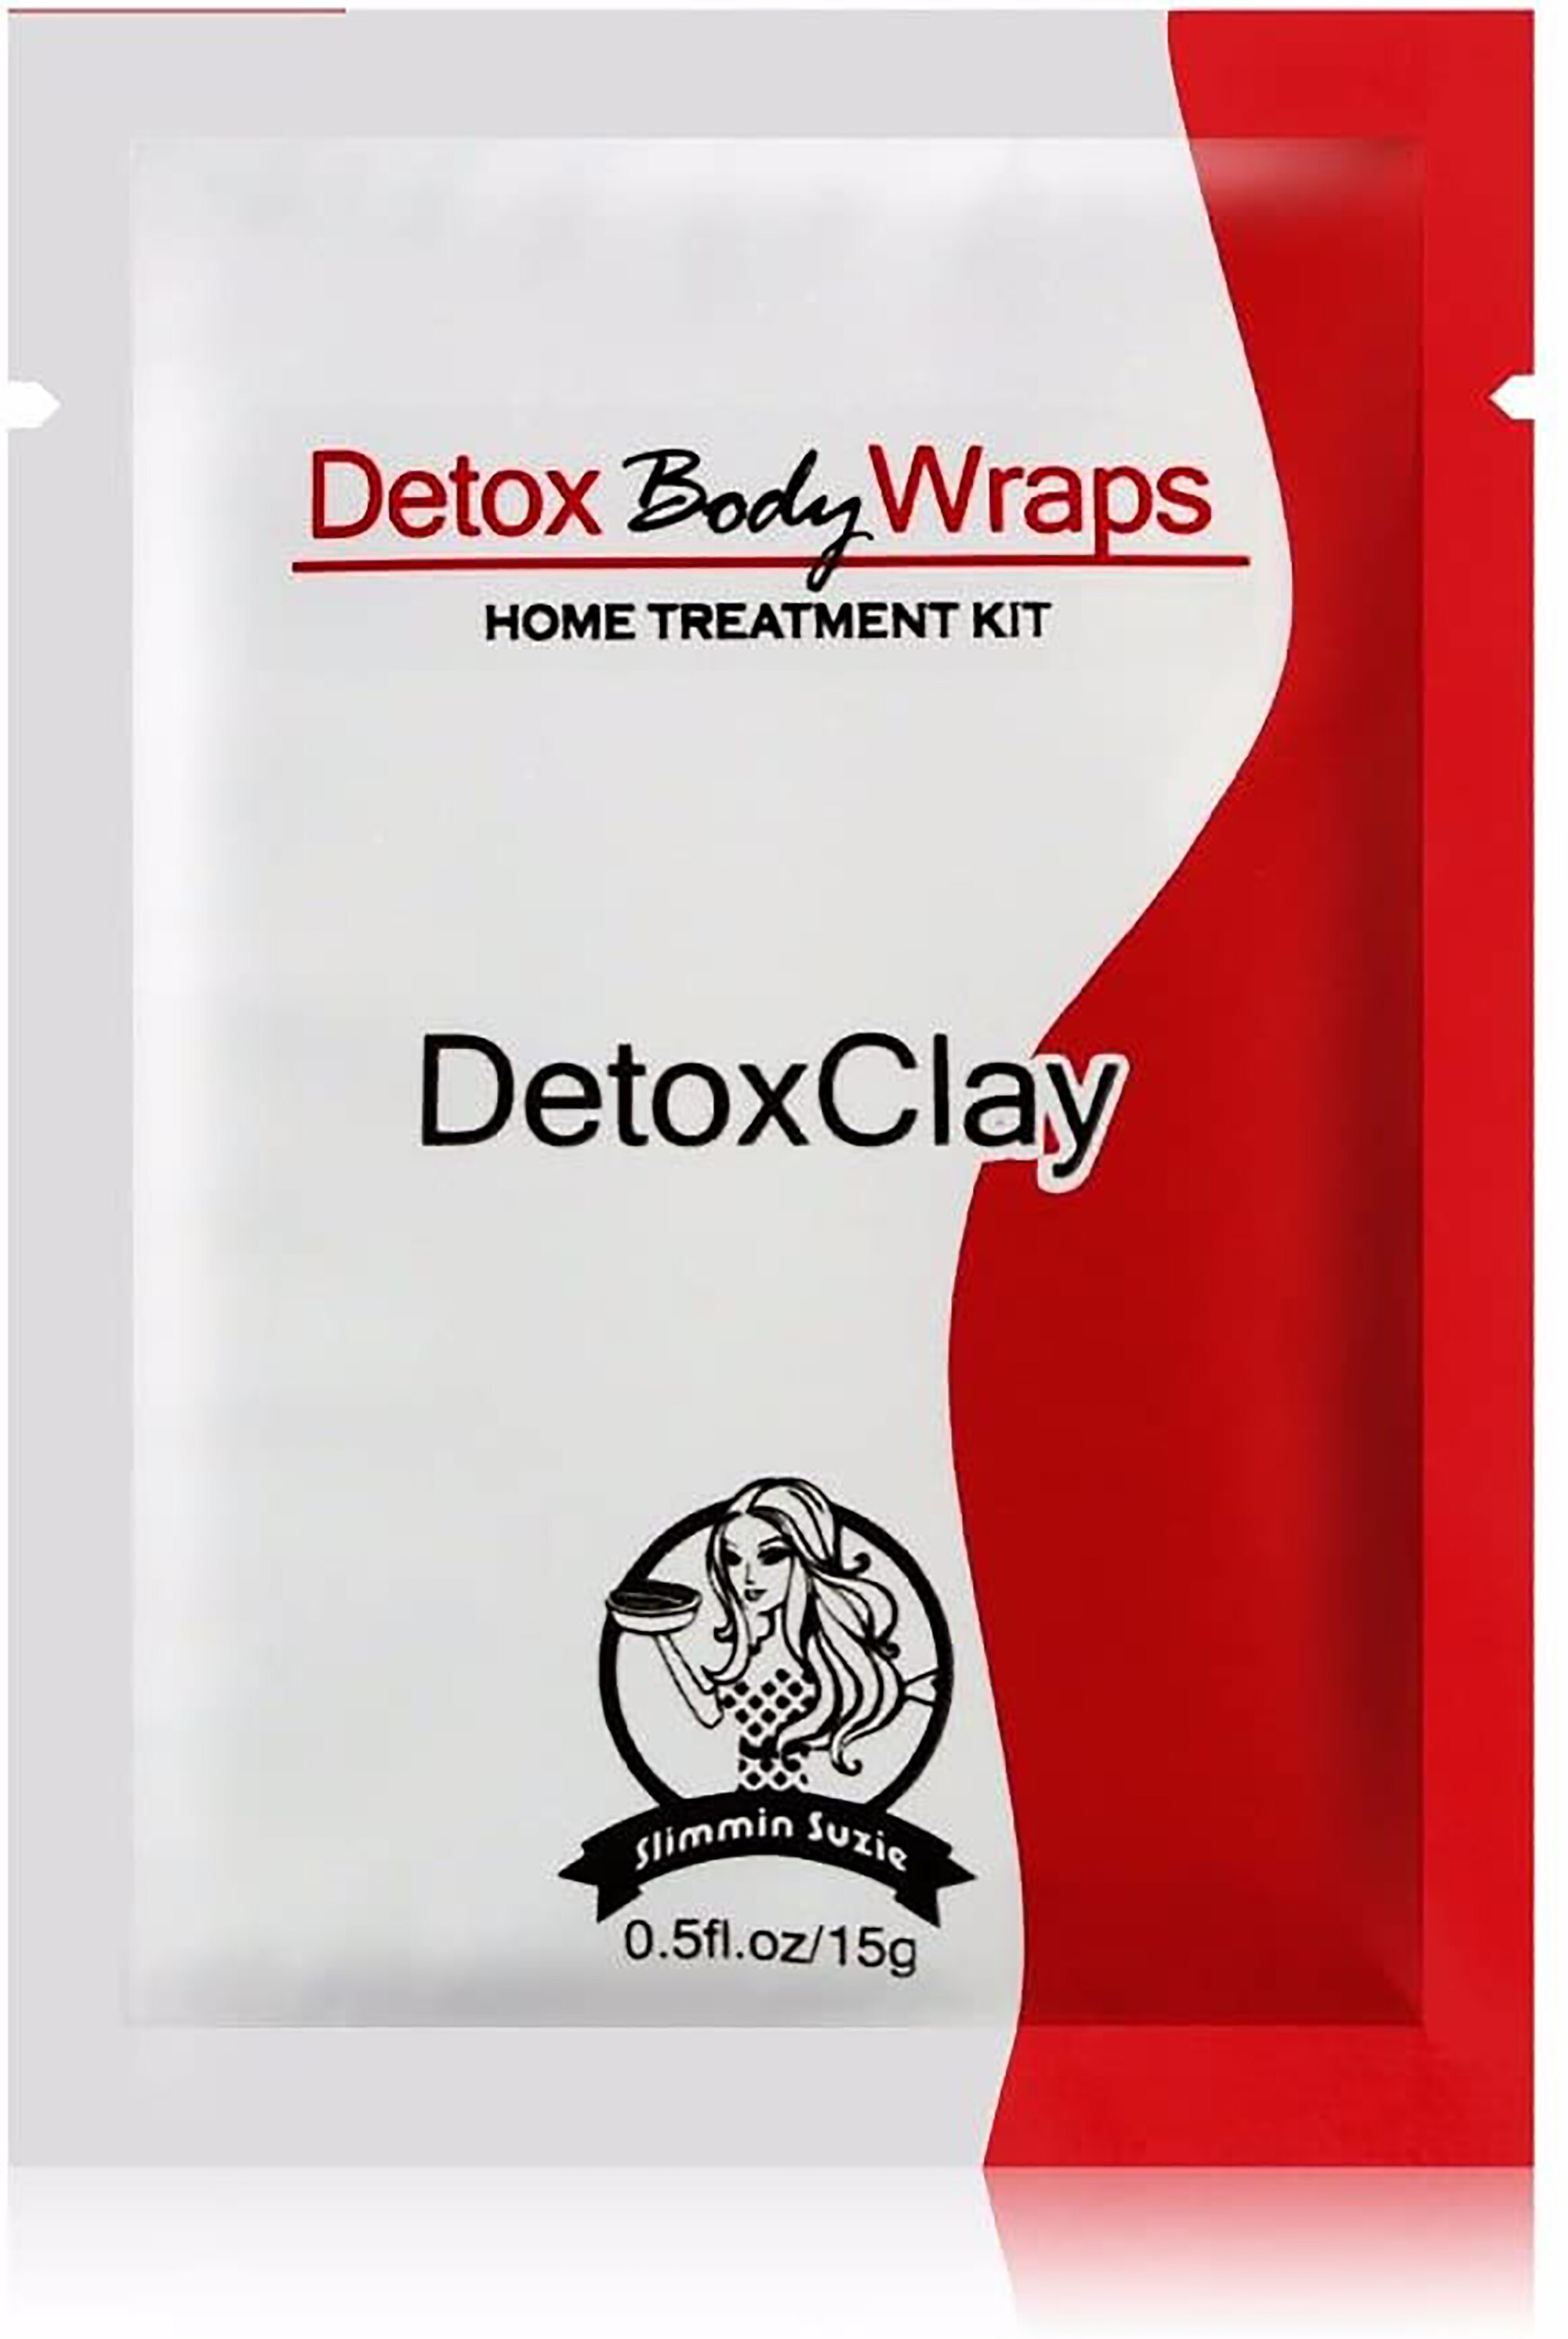 IGIA Clay Detox Body Wraps